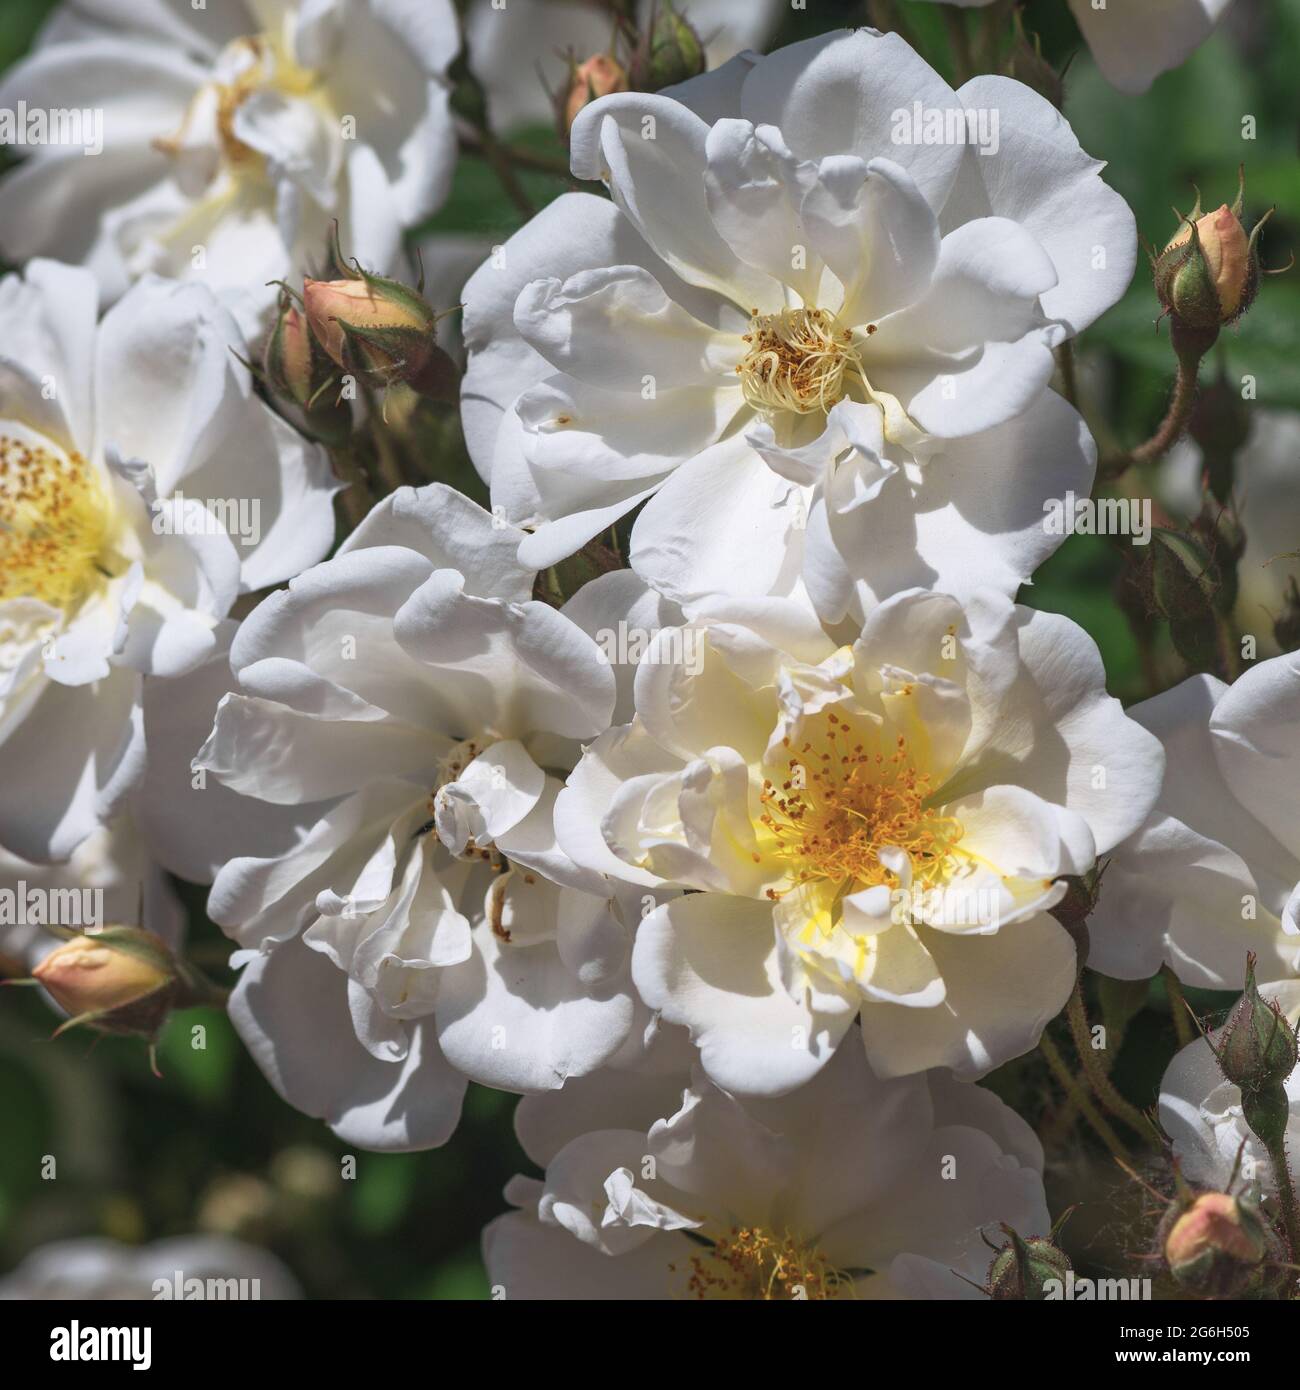 Rosa Iceberg - flores blancas, planas, copadas, medianas-dobles (25-35 pétalos), con un aroma suave, en numerosas inflorescencias. Foto de stock